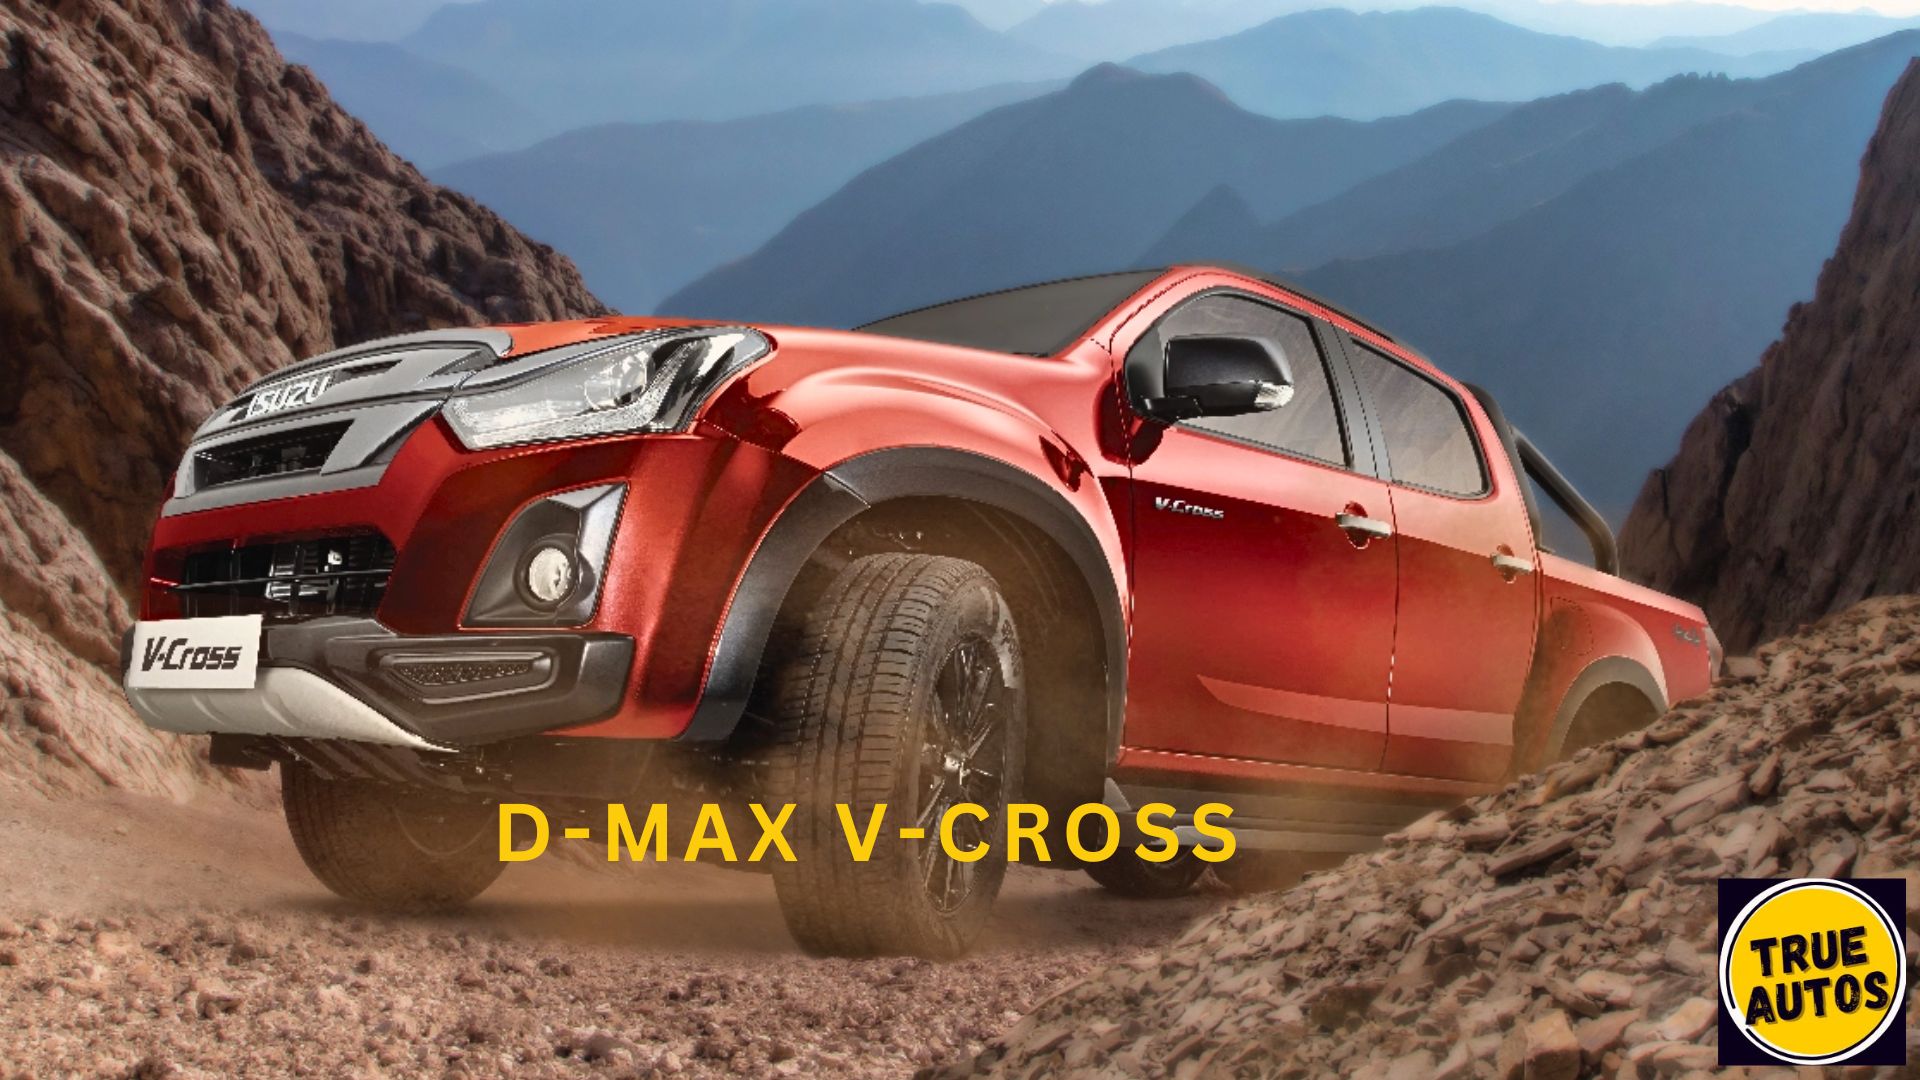 D-MAX V-CROSS